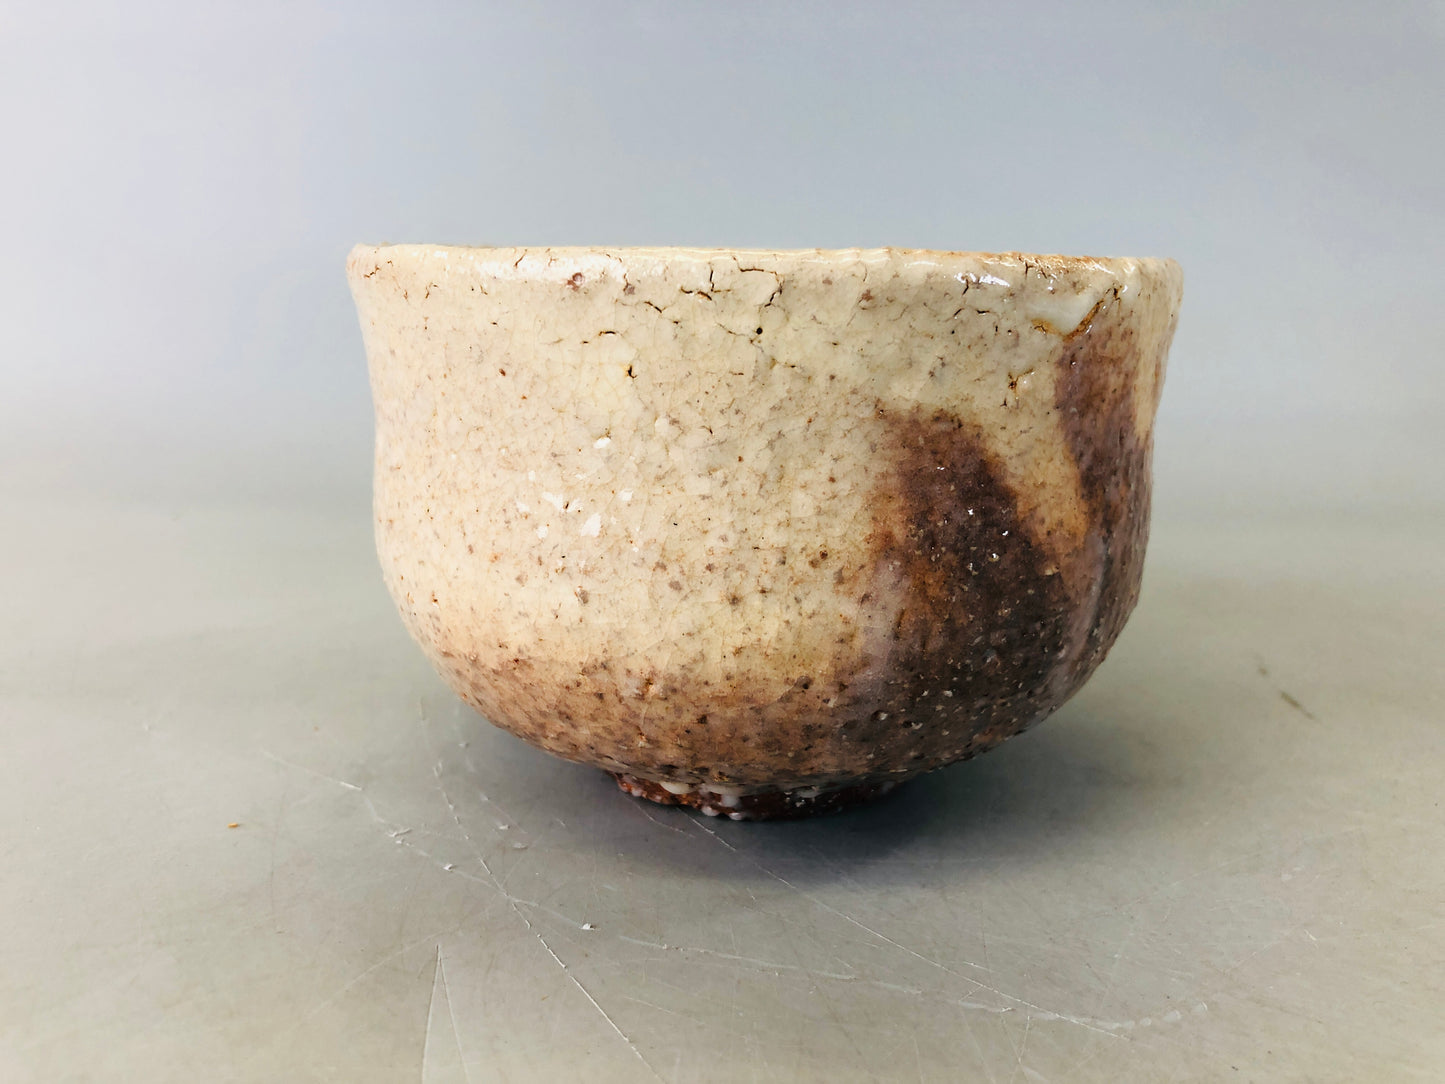 Y6295 [VIDEO] CHAWAN Hagi-ware bowl box Japan antique tea ceremony pottery cup vintage